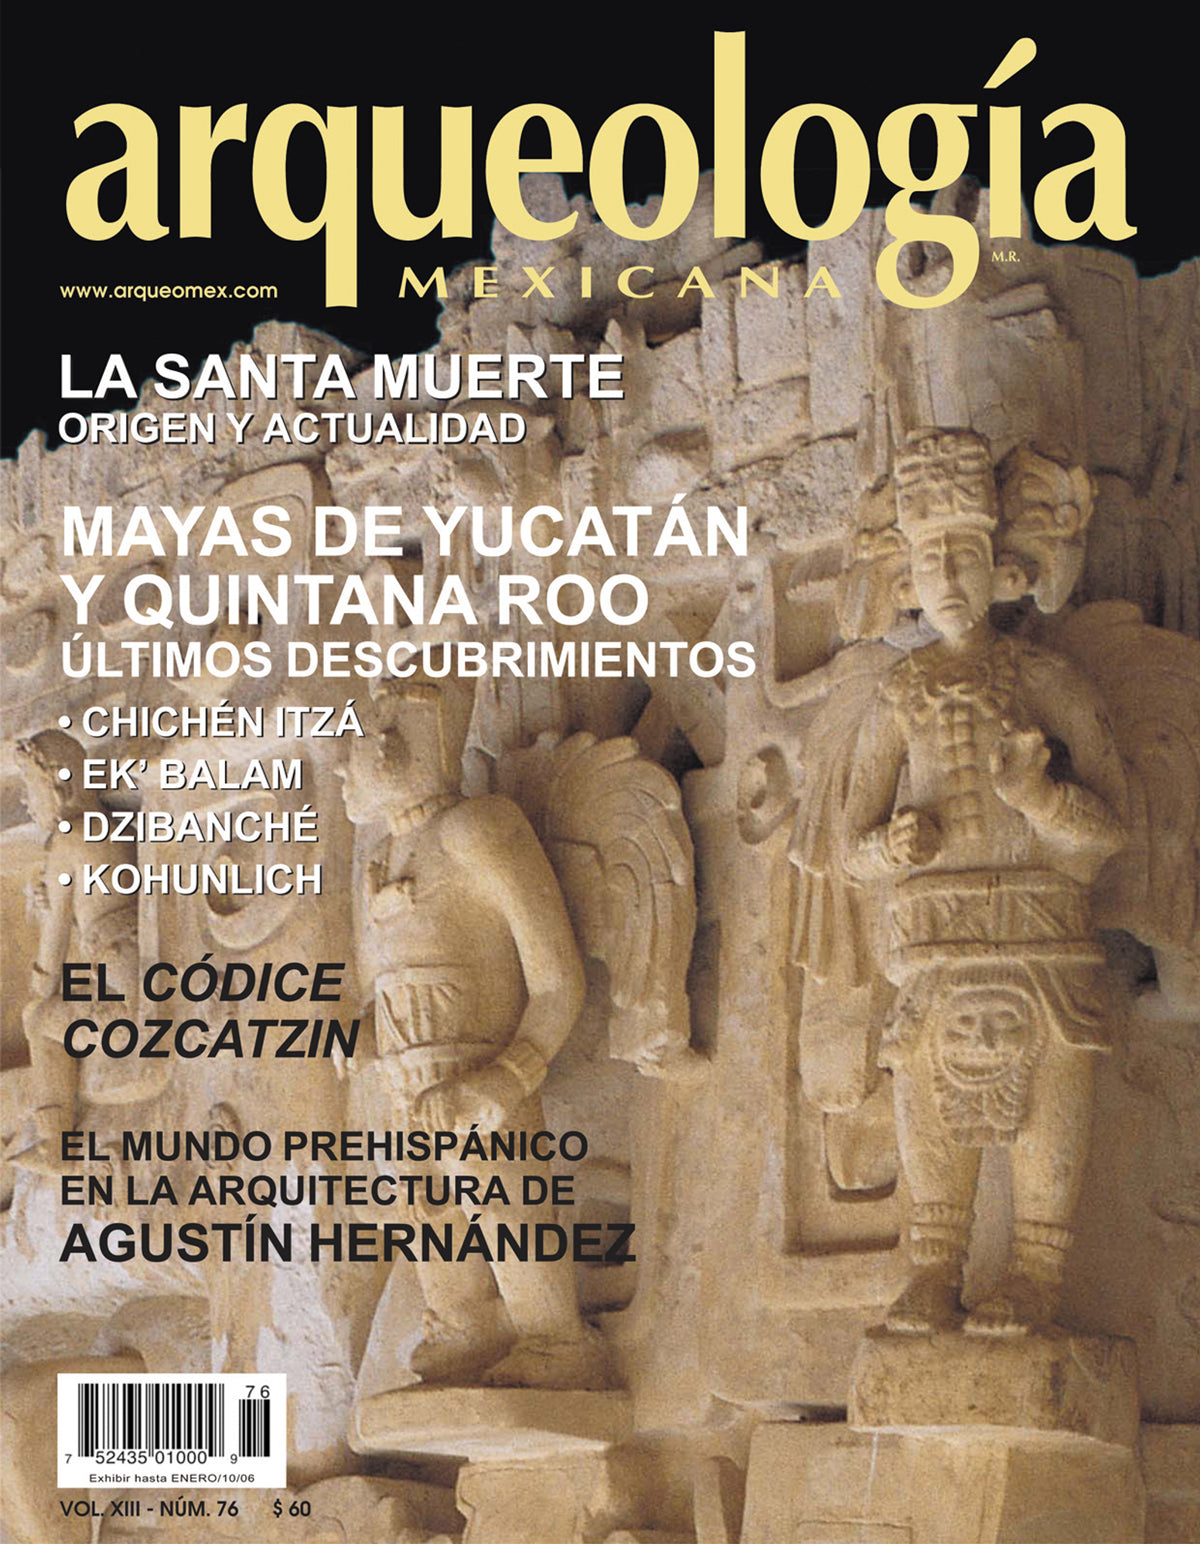 Mayas de Yucatán y Quintana Roo